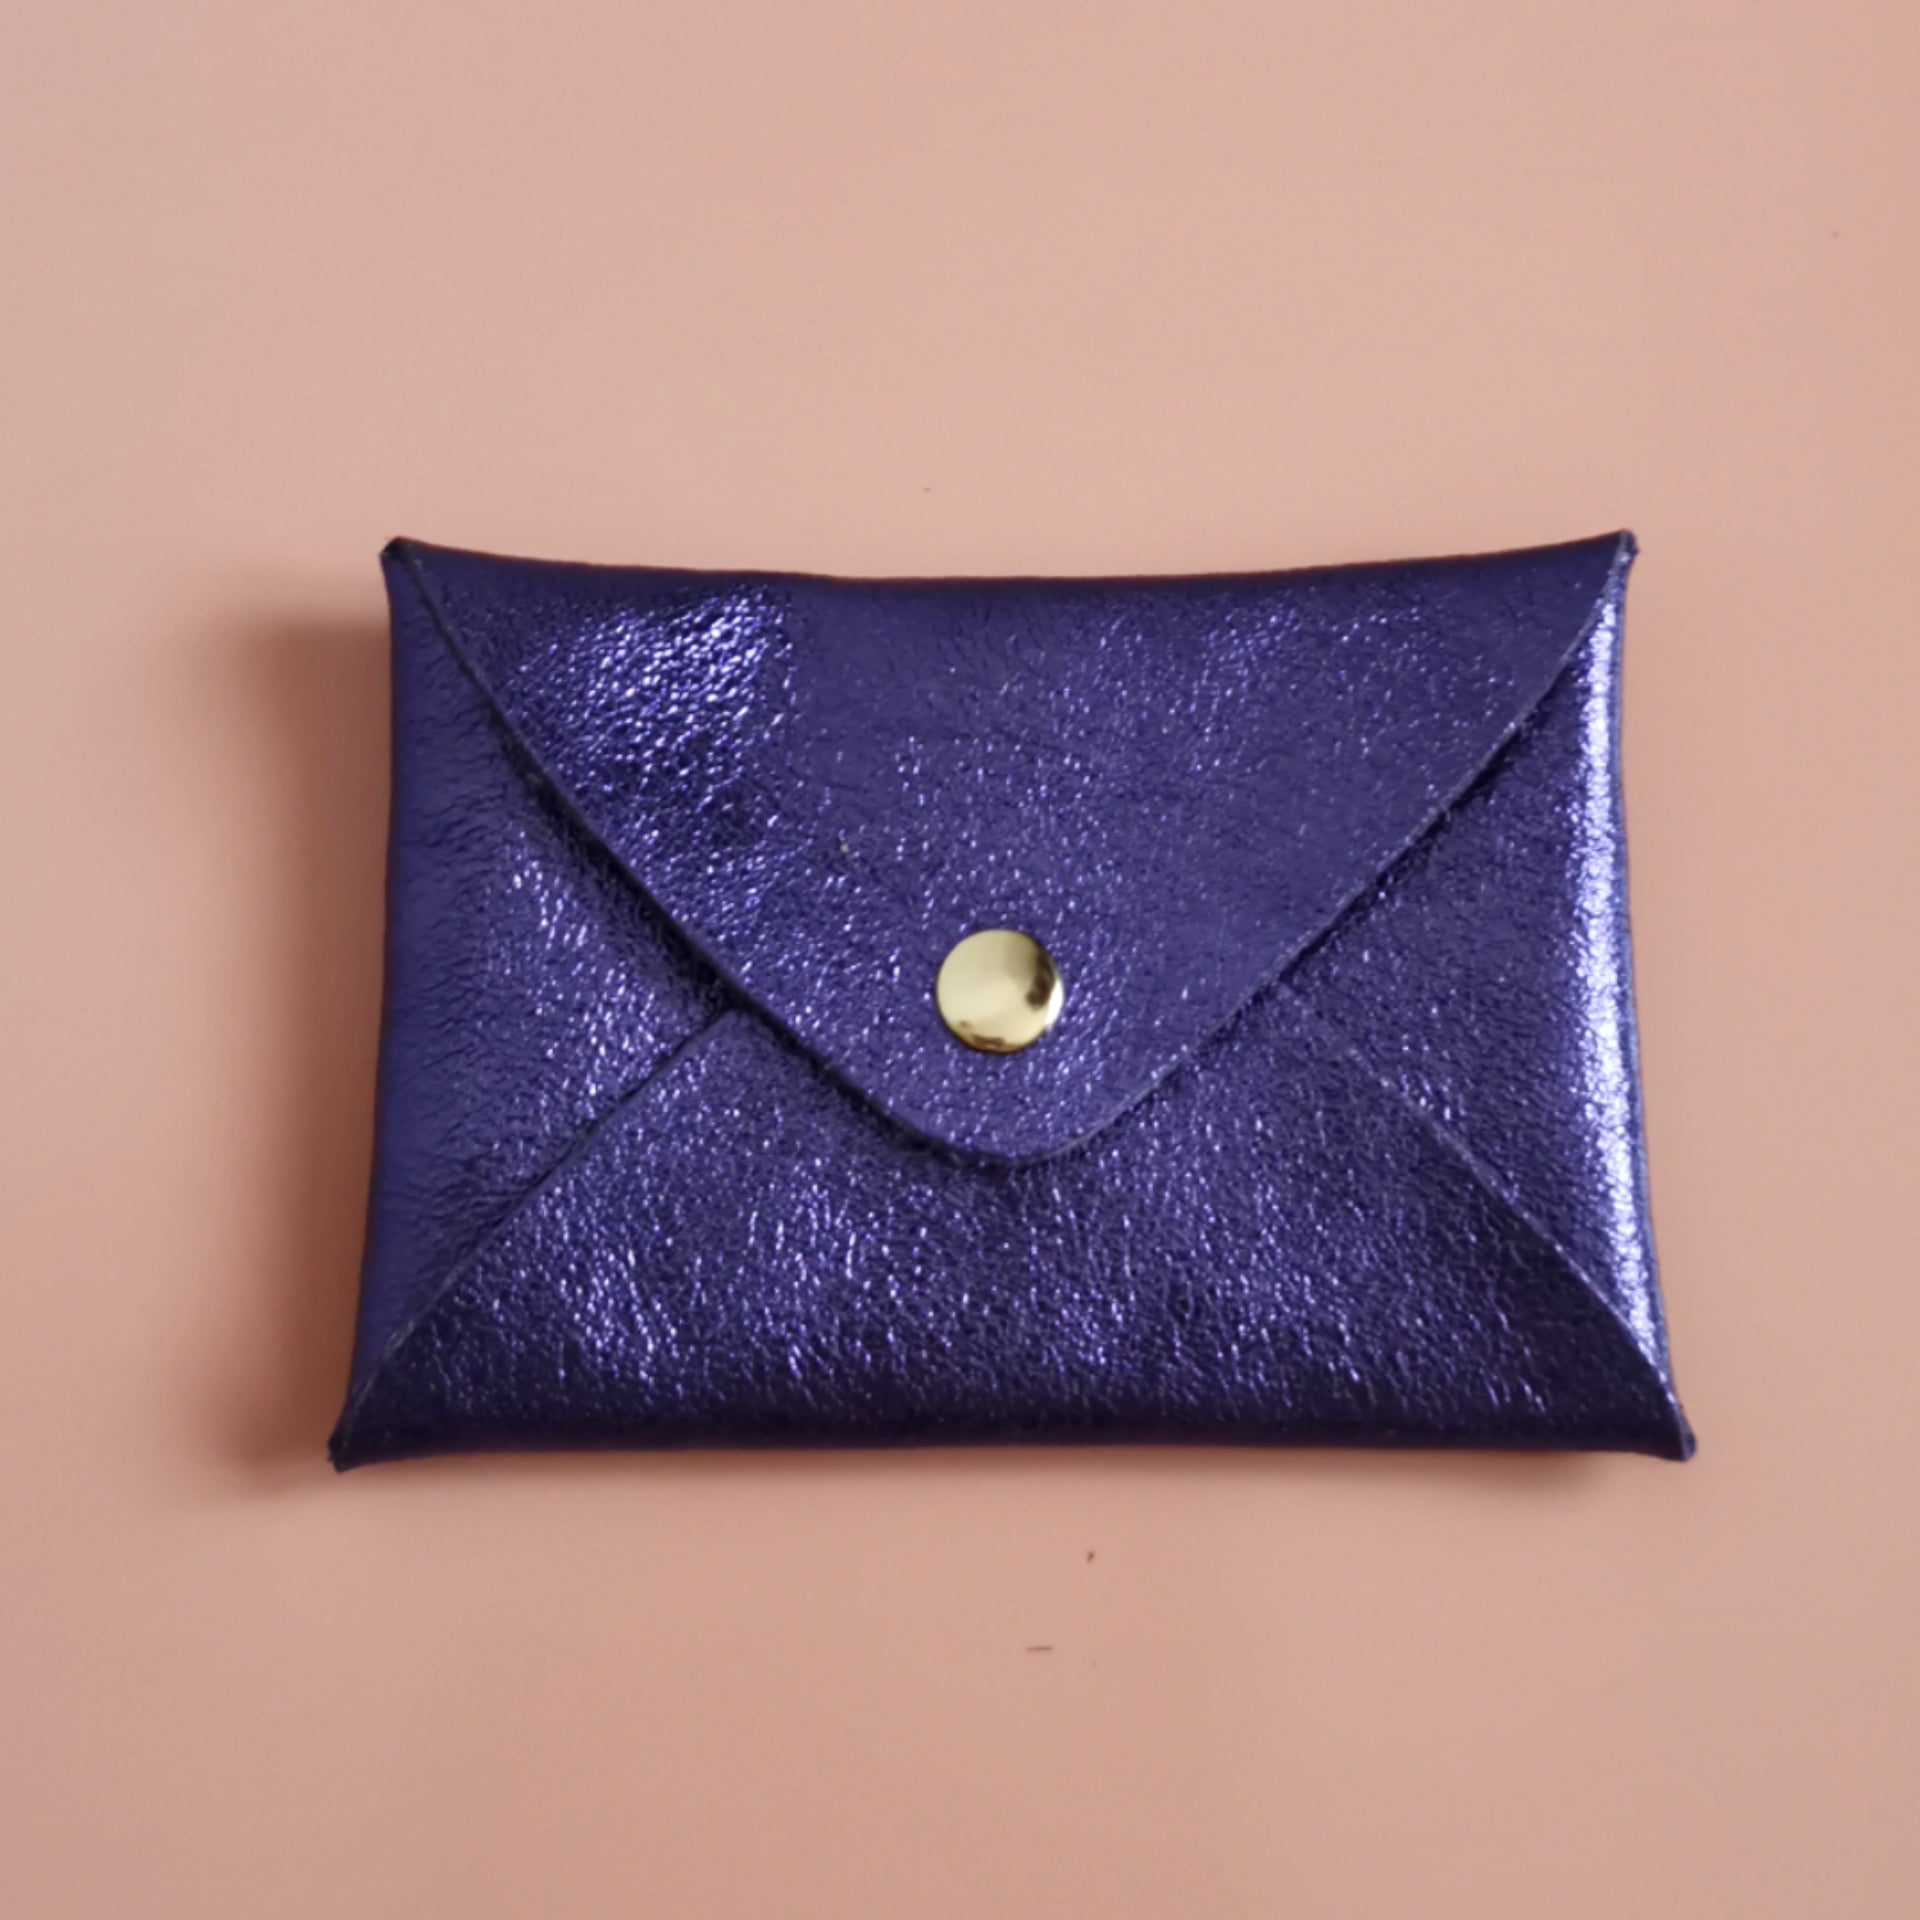 Porte-carte origami violet